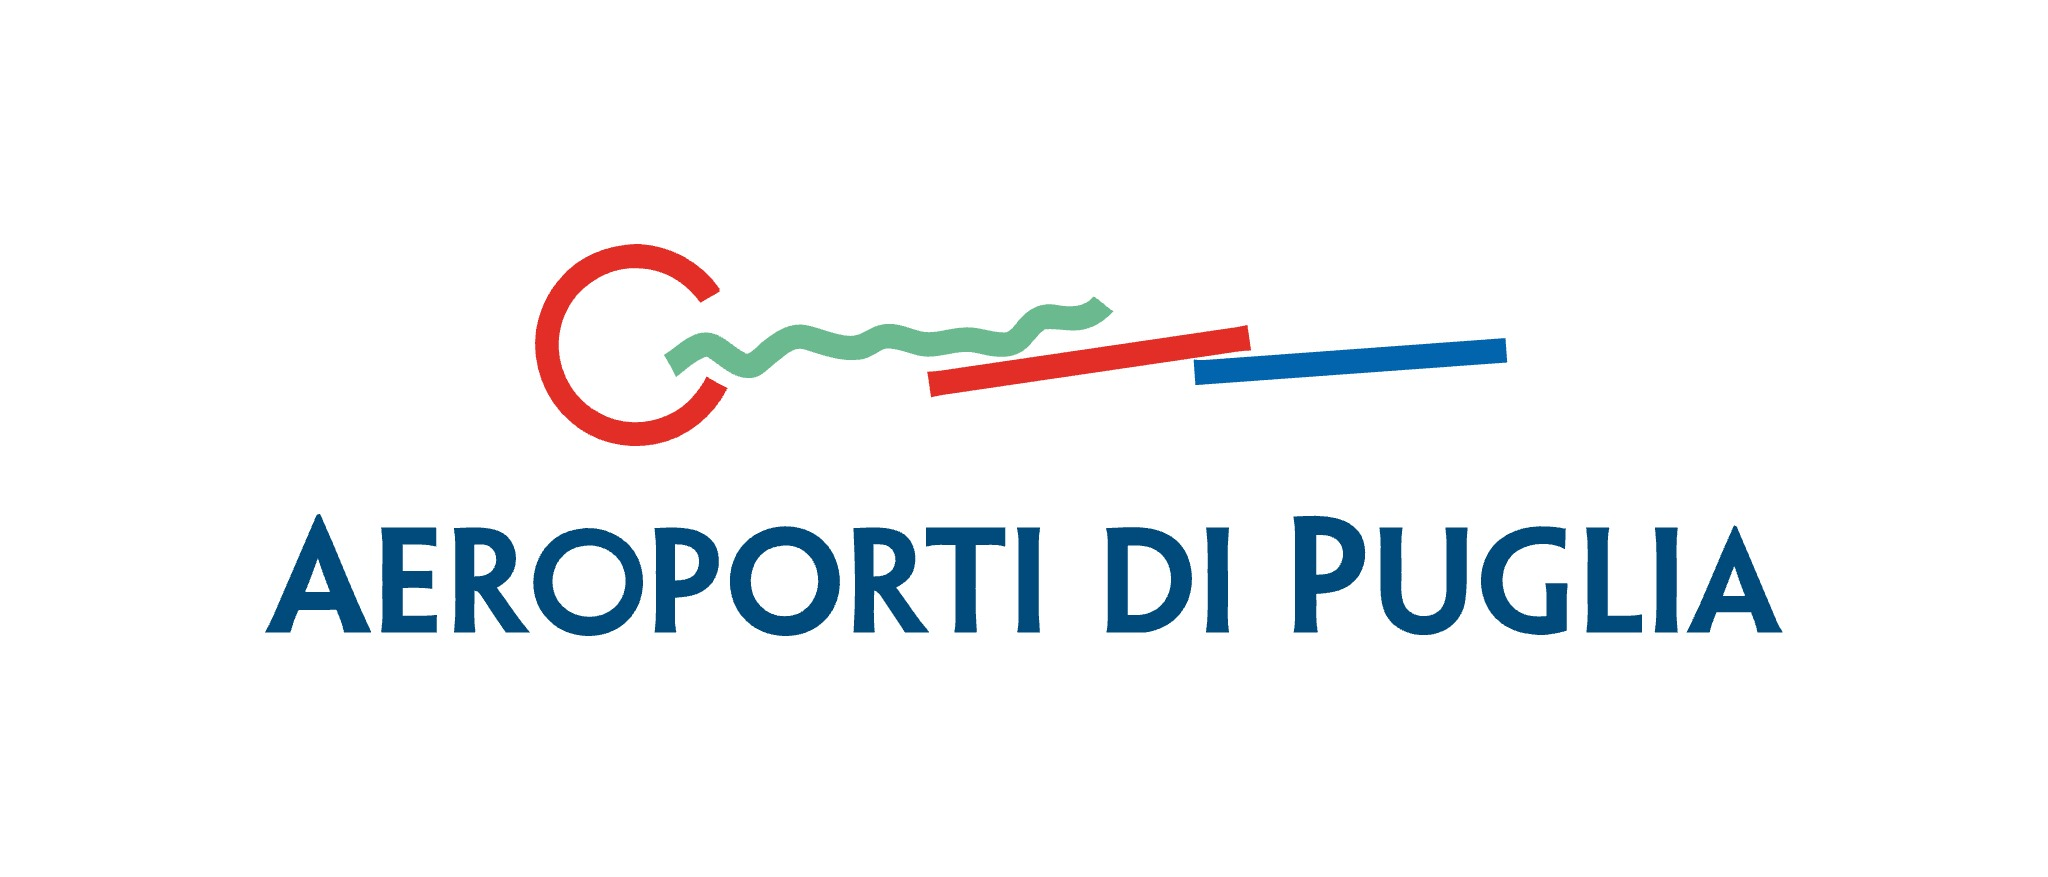 Catalogo Aeroporti di Puglia